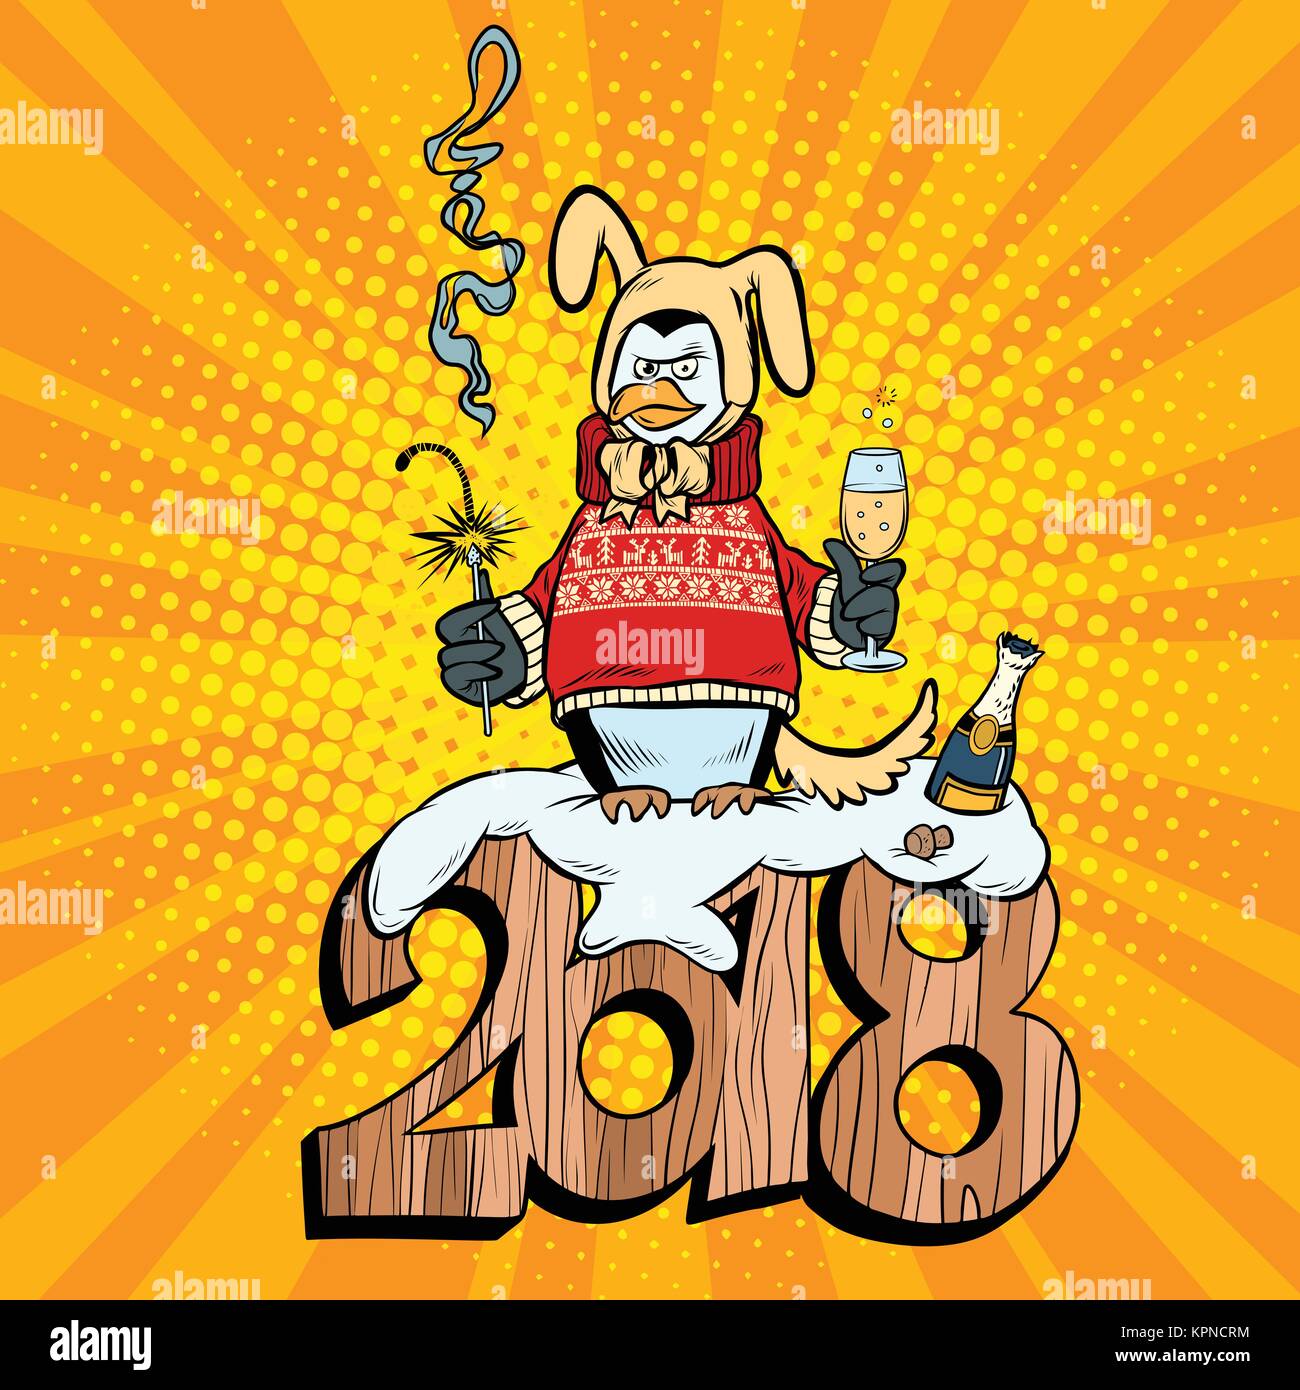 2018 Neues Jahr, penguin Anzug gelbe Erde Hund. Sekt und Wunderkerzen. Comic cartoon Pop Art retro Vektor illustration Zeichnung Stock Vektor